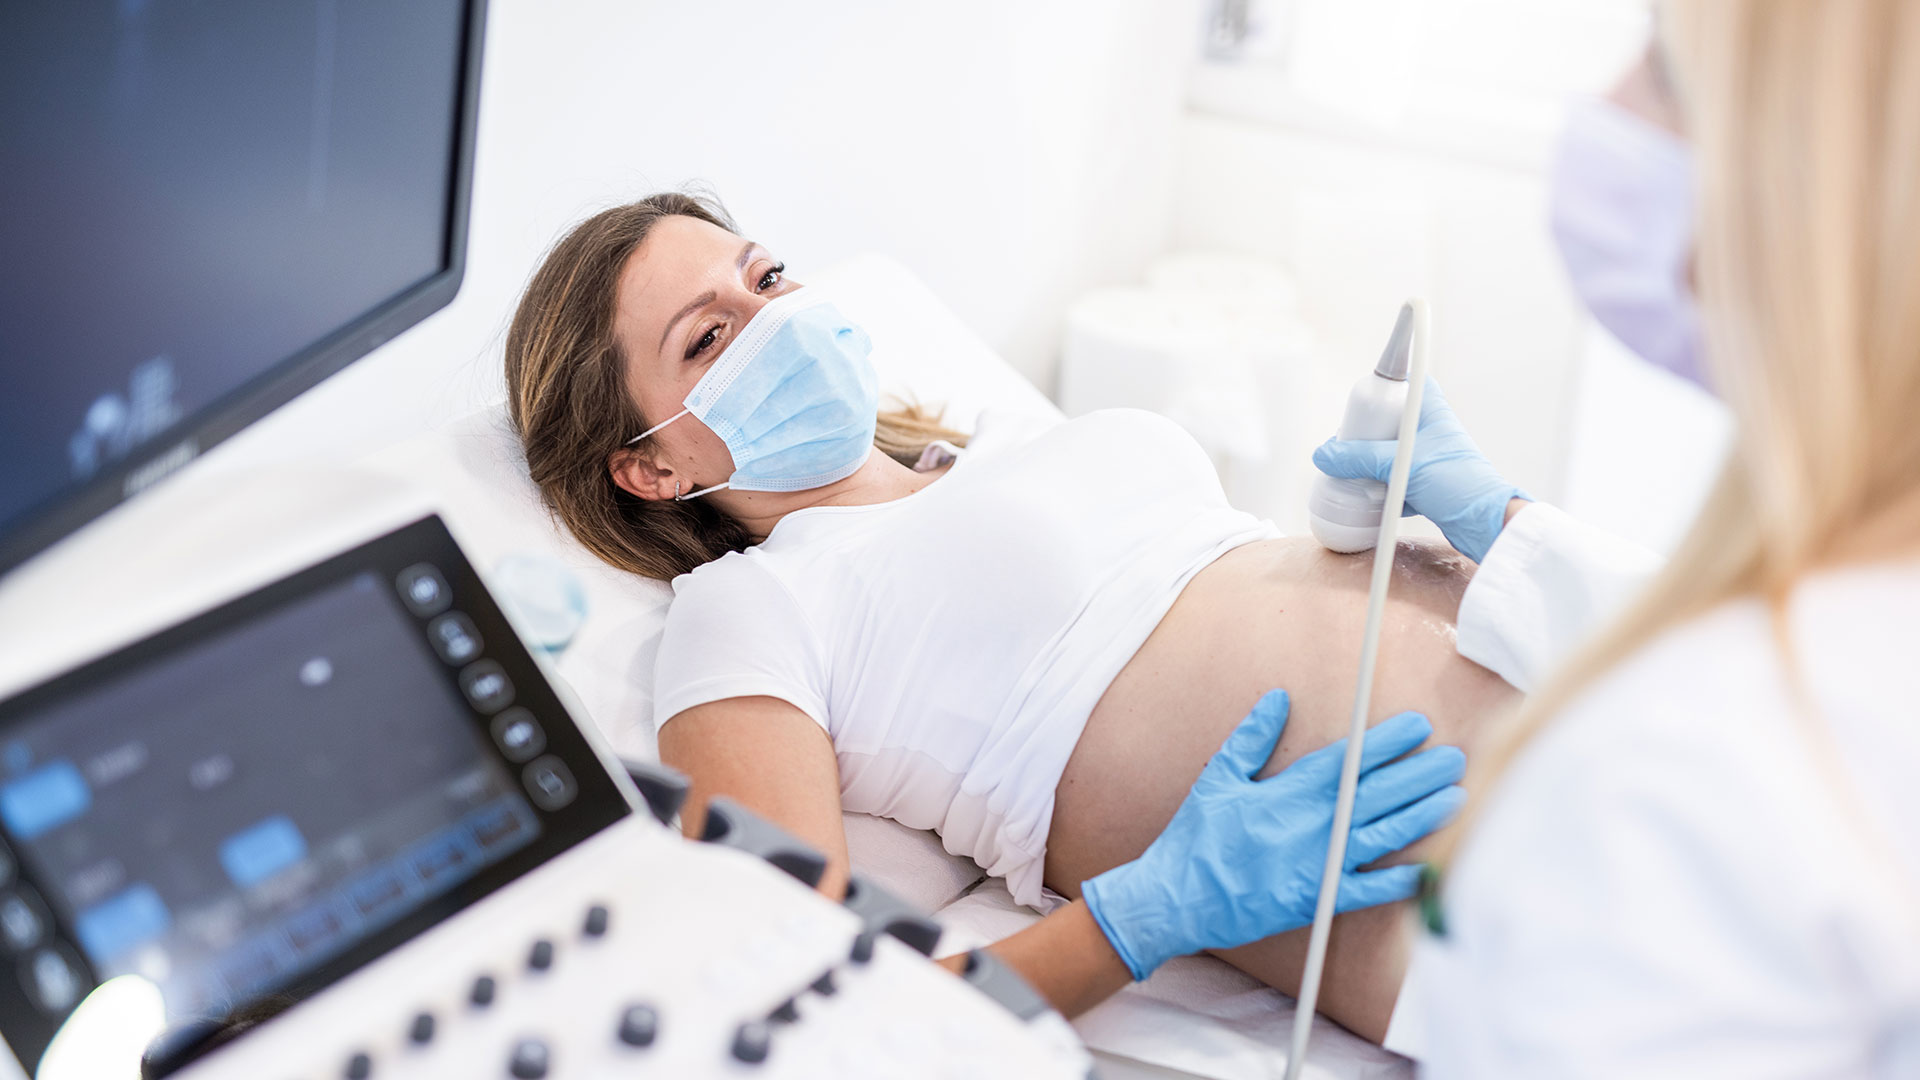 "La investigación proporciona una garantía muy necesaria a las mujeres sobre la seguridad y los beneficios de la vacunación contra la COVID-19 durante el embarazo", aseguran los investigadores (Getty)